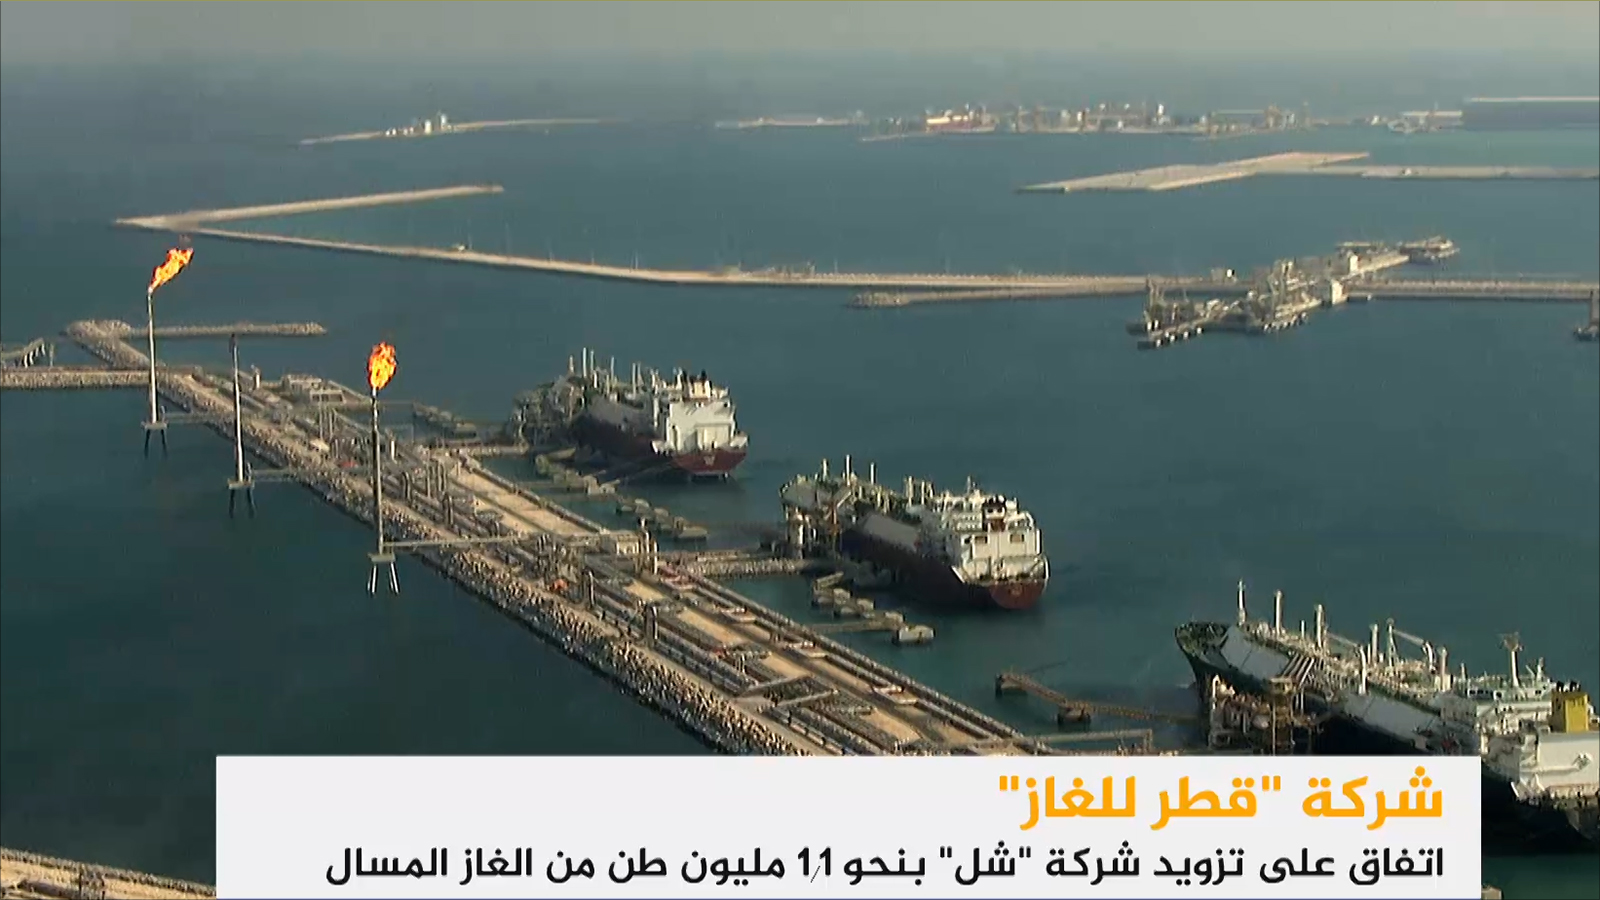 ‪قطر للغاز وقعت اتفاقا مع شل لتزويدها بنحو 1.1 مليون طن سنويا من الغاز الطبيعي المسال لمدة خمس سنوات‬ قطر للغاز وقعت اتفاقا مع شل لتزويدها بنحو 1.1 مليون طن سنويا من الغاز الطبيعي المسال لمدة خمس سنوات (الجزيرة)